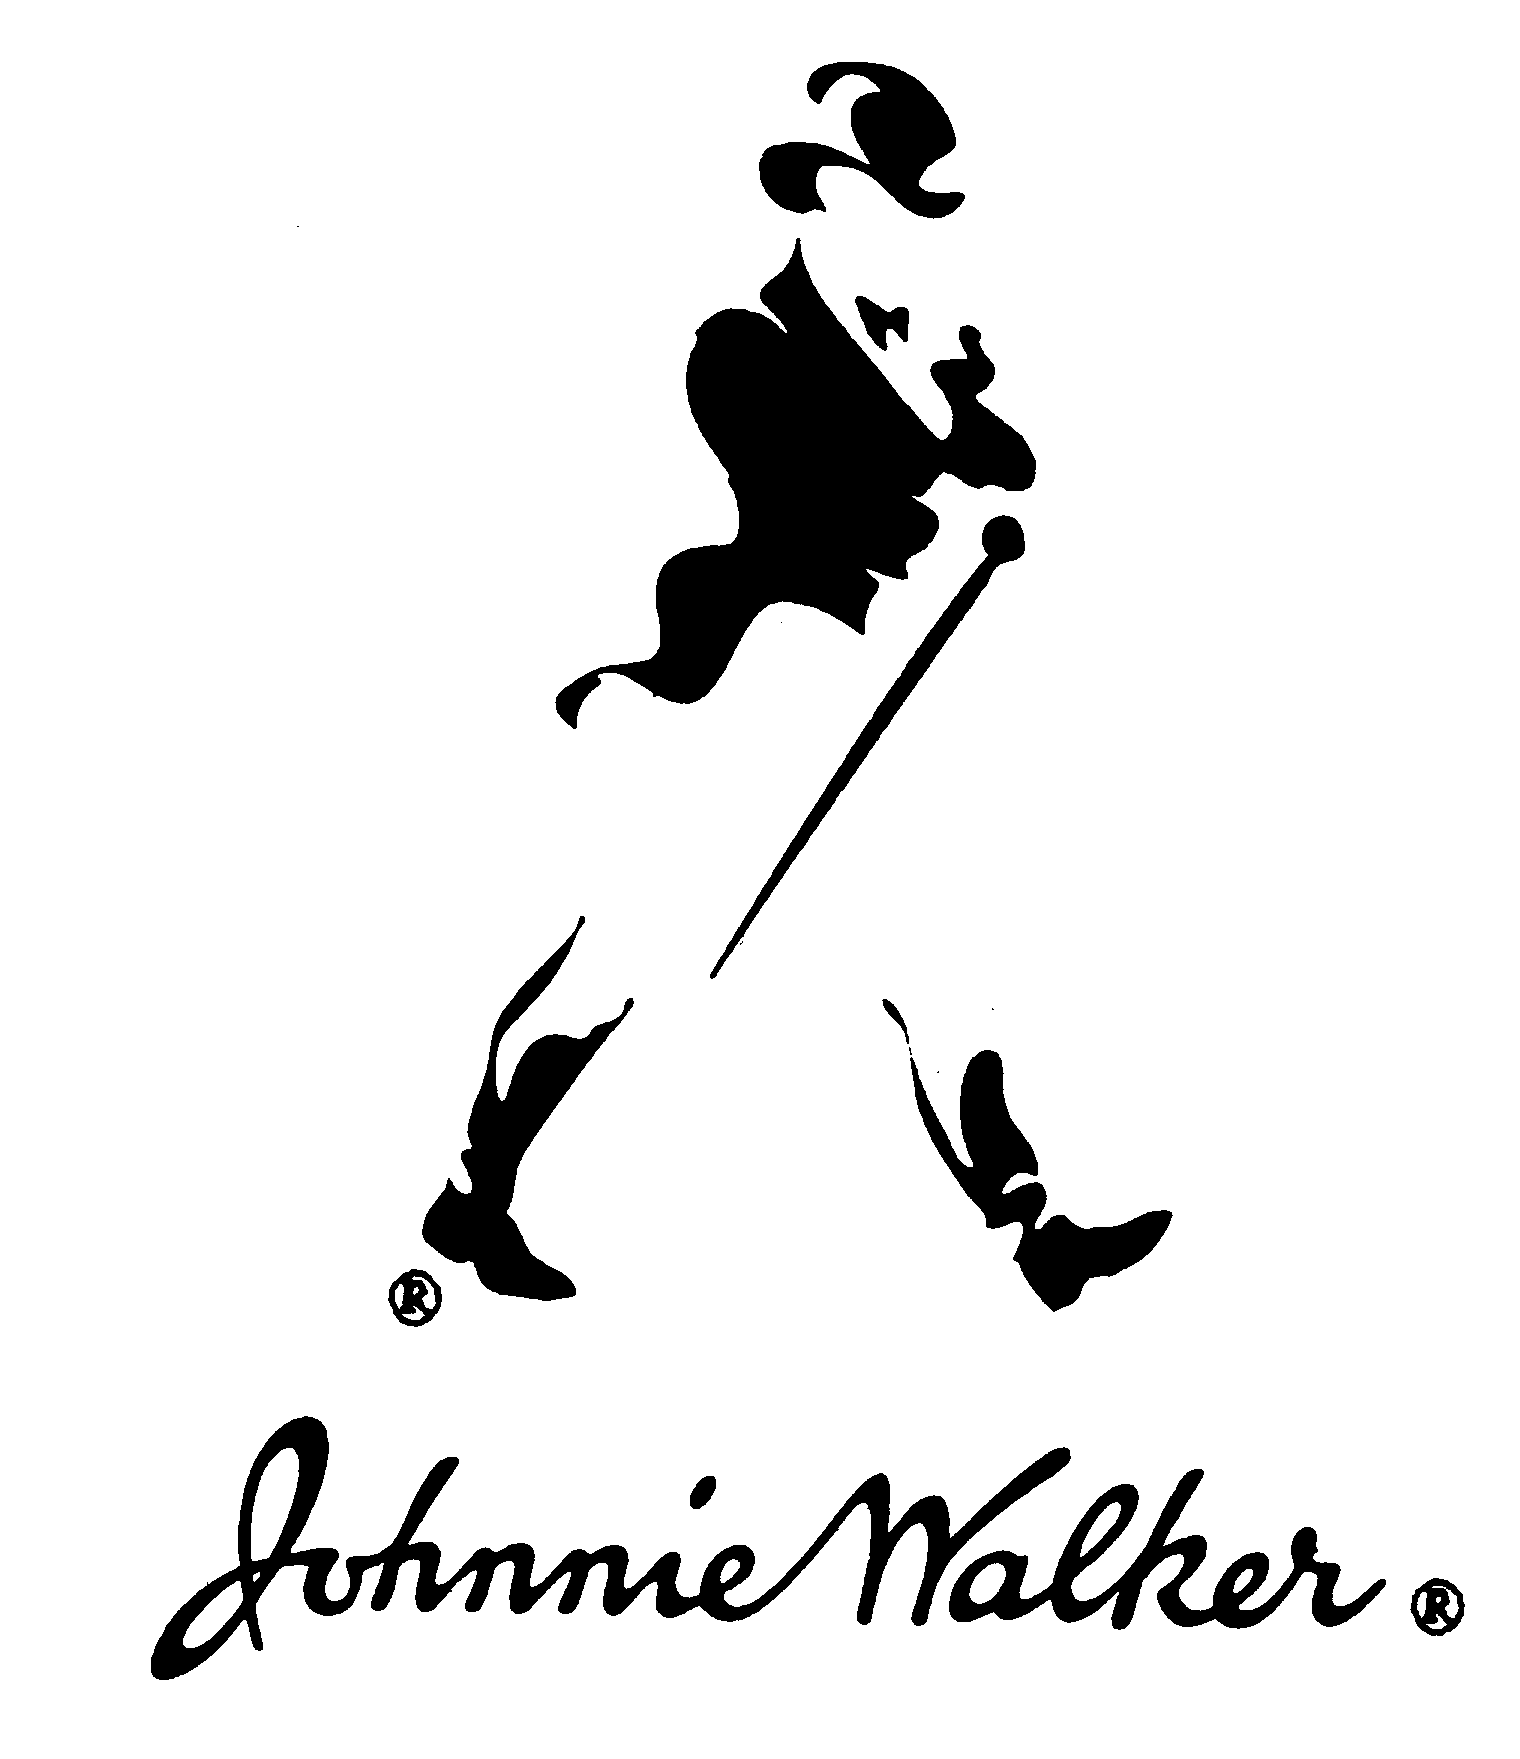 Johnie Walker